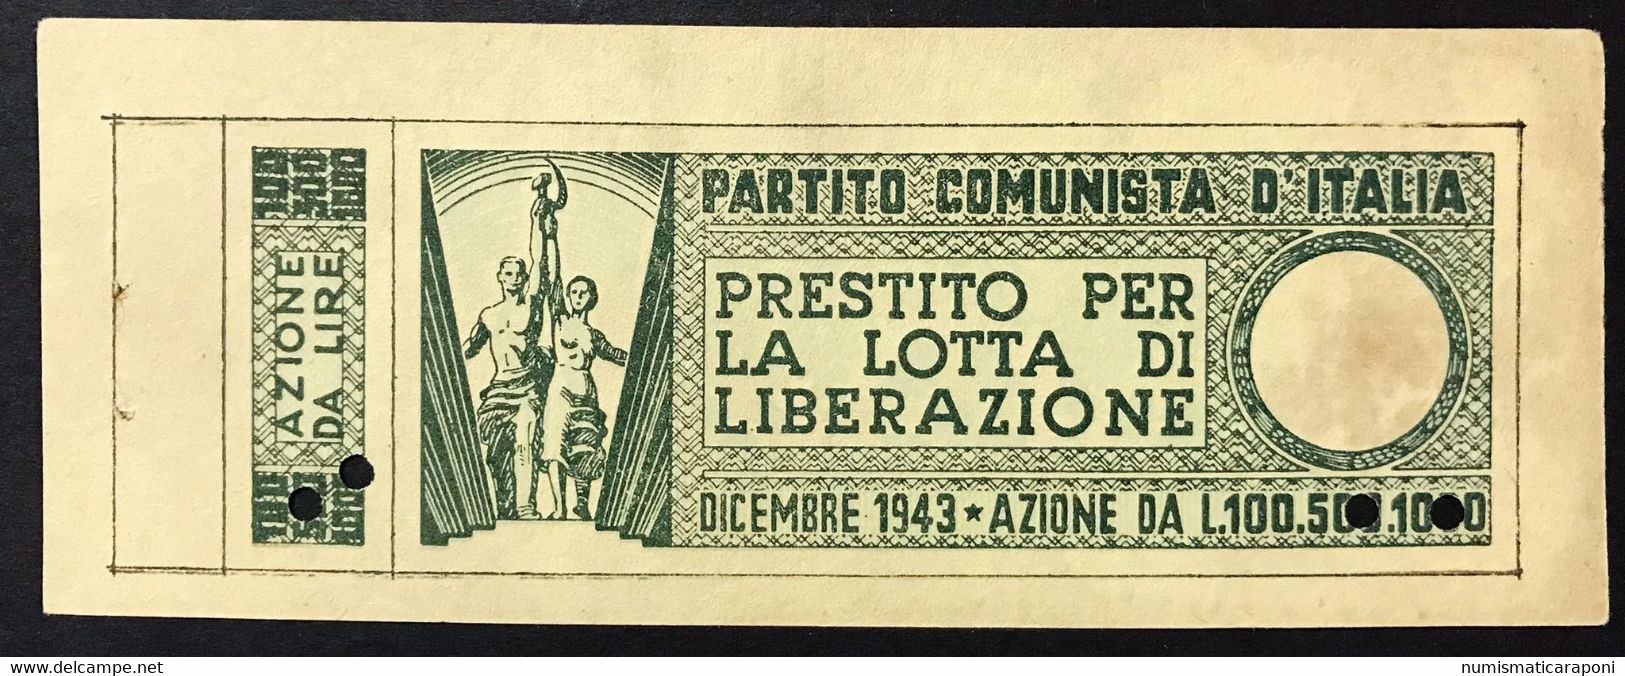 100 LIRE PARTITO COMUNISTA D'ITALIA LOTTA DI LIBERAZIONE DICEMBRE 1943 Lotto 4166 - Ocupación Aliados Segunda Guerra Mundial